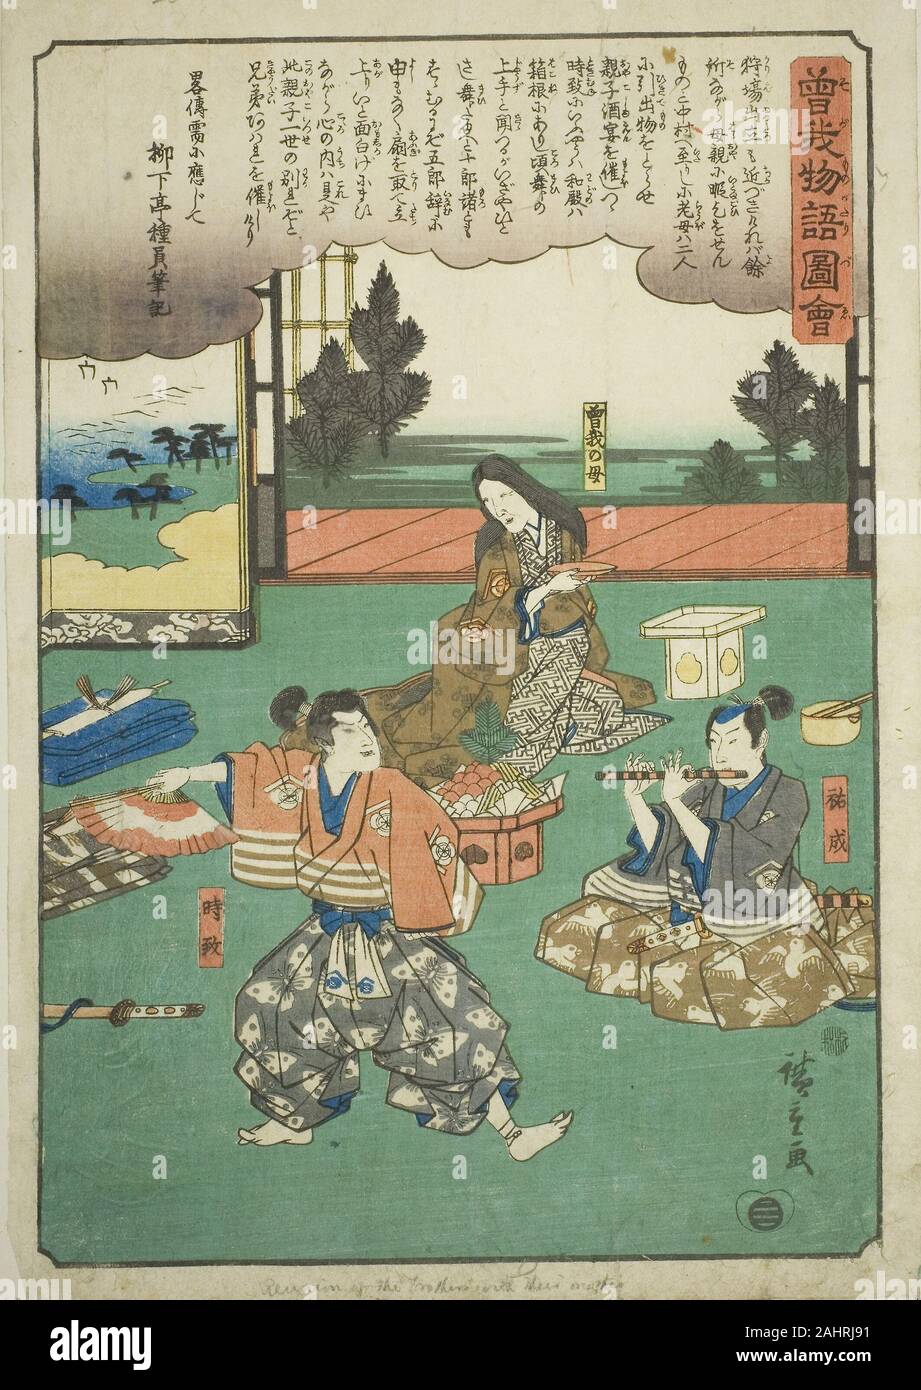 Utagawa Hiroshige. Sukenari (Soga no Juro), Tokimune (Soga no Goro